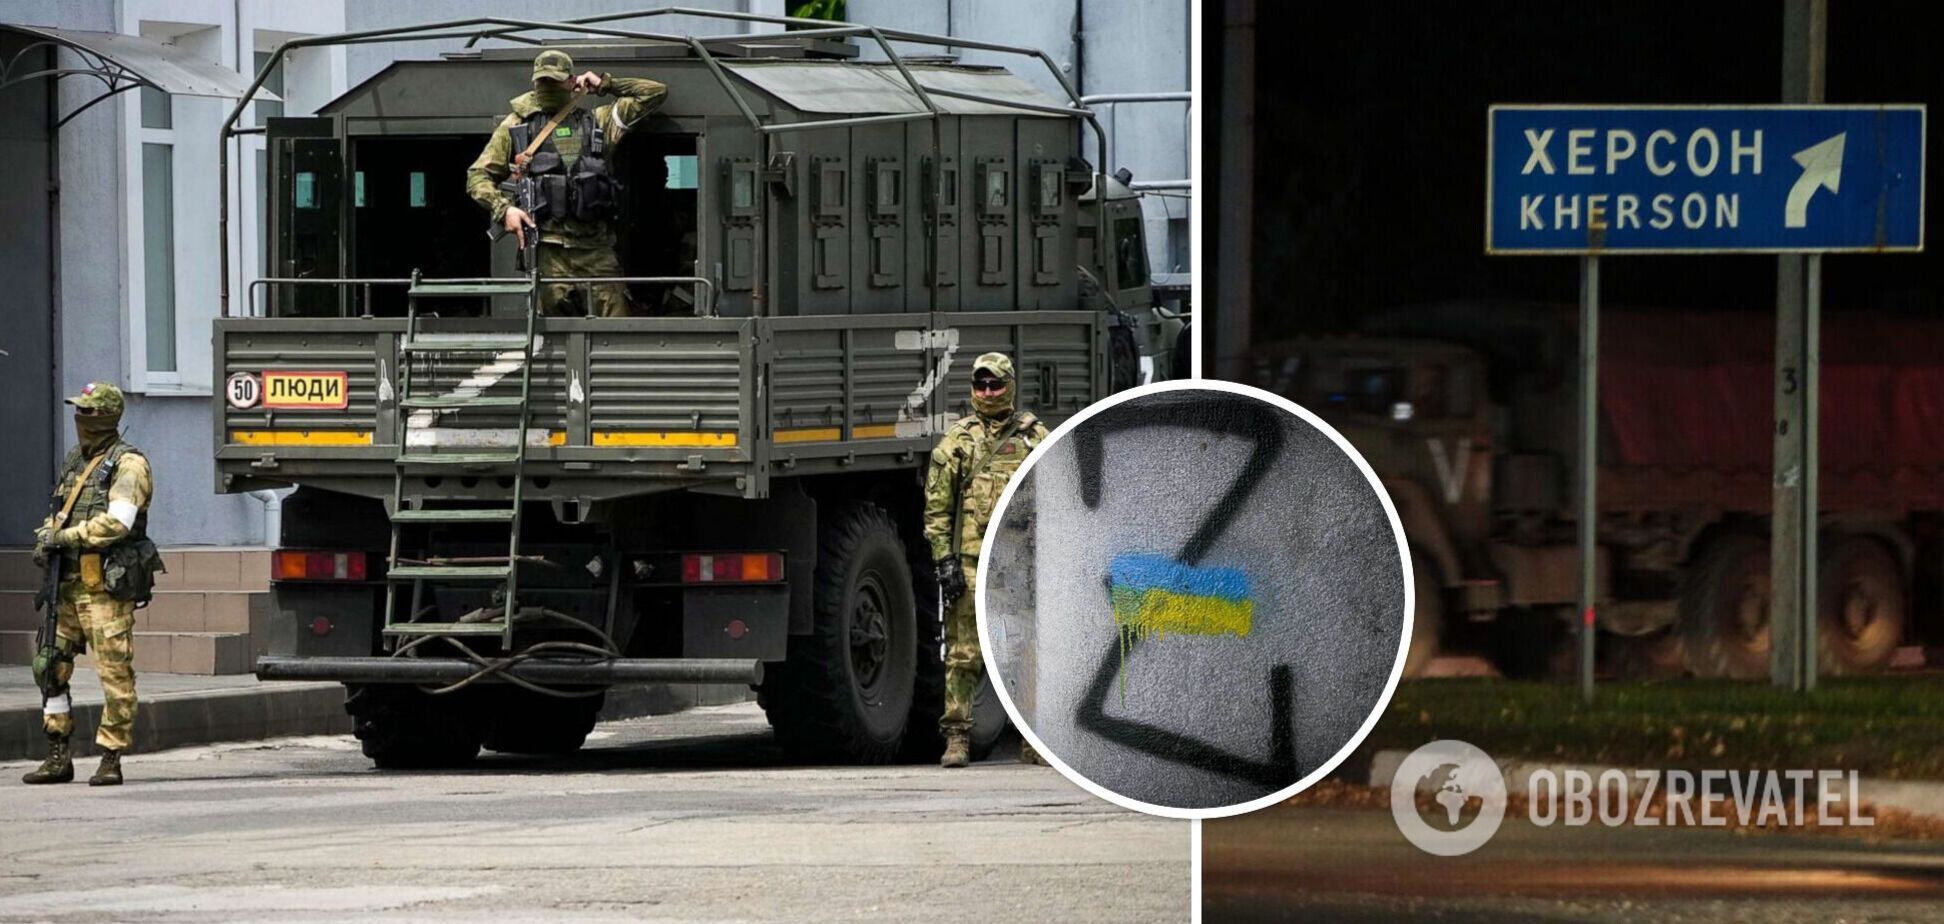 'Новости не слушайте': оккупант в разговоре с родственником признался, что войска РФ отступают из Херсона в Крым. Аудио